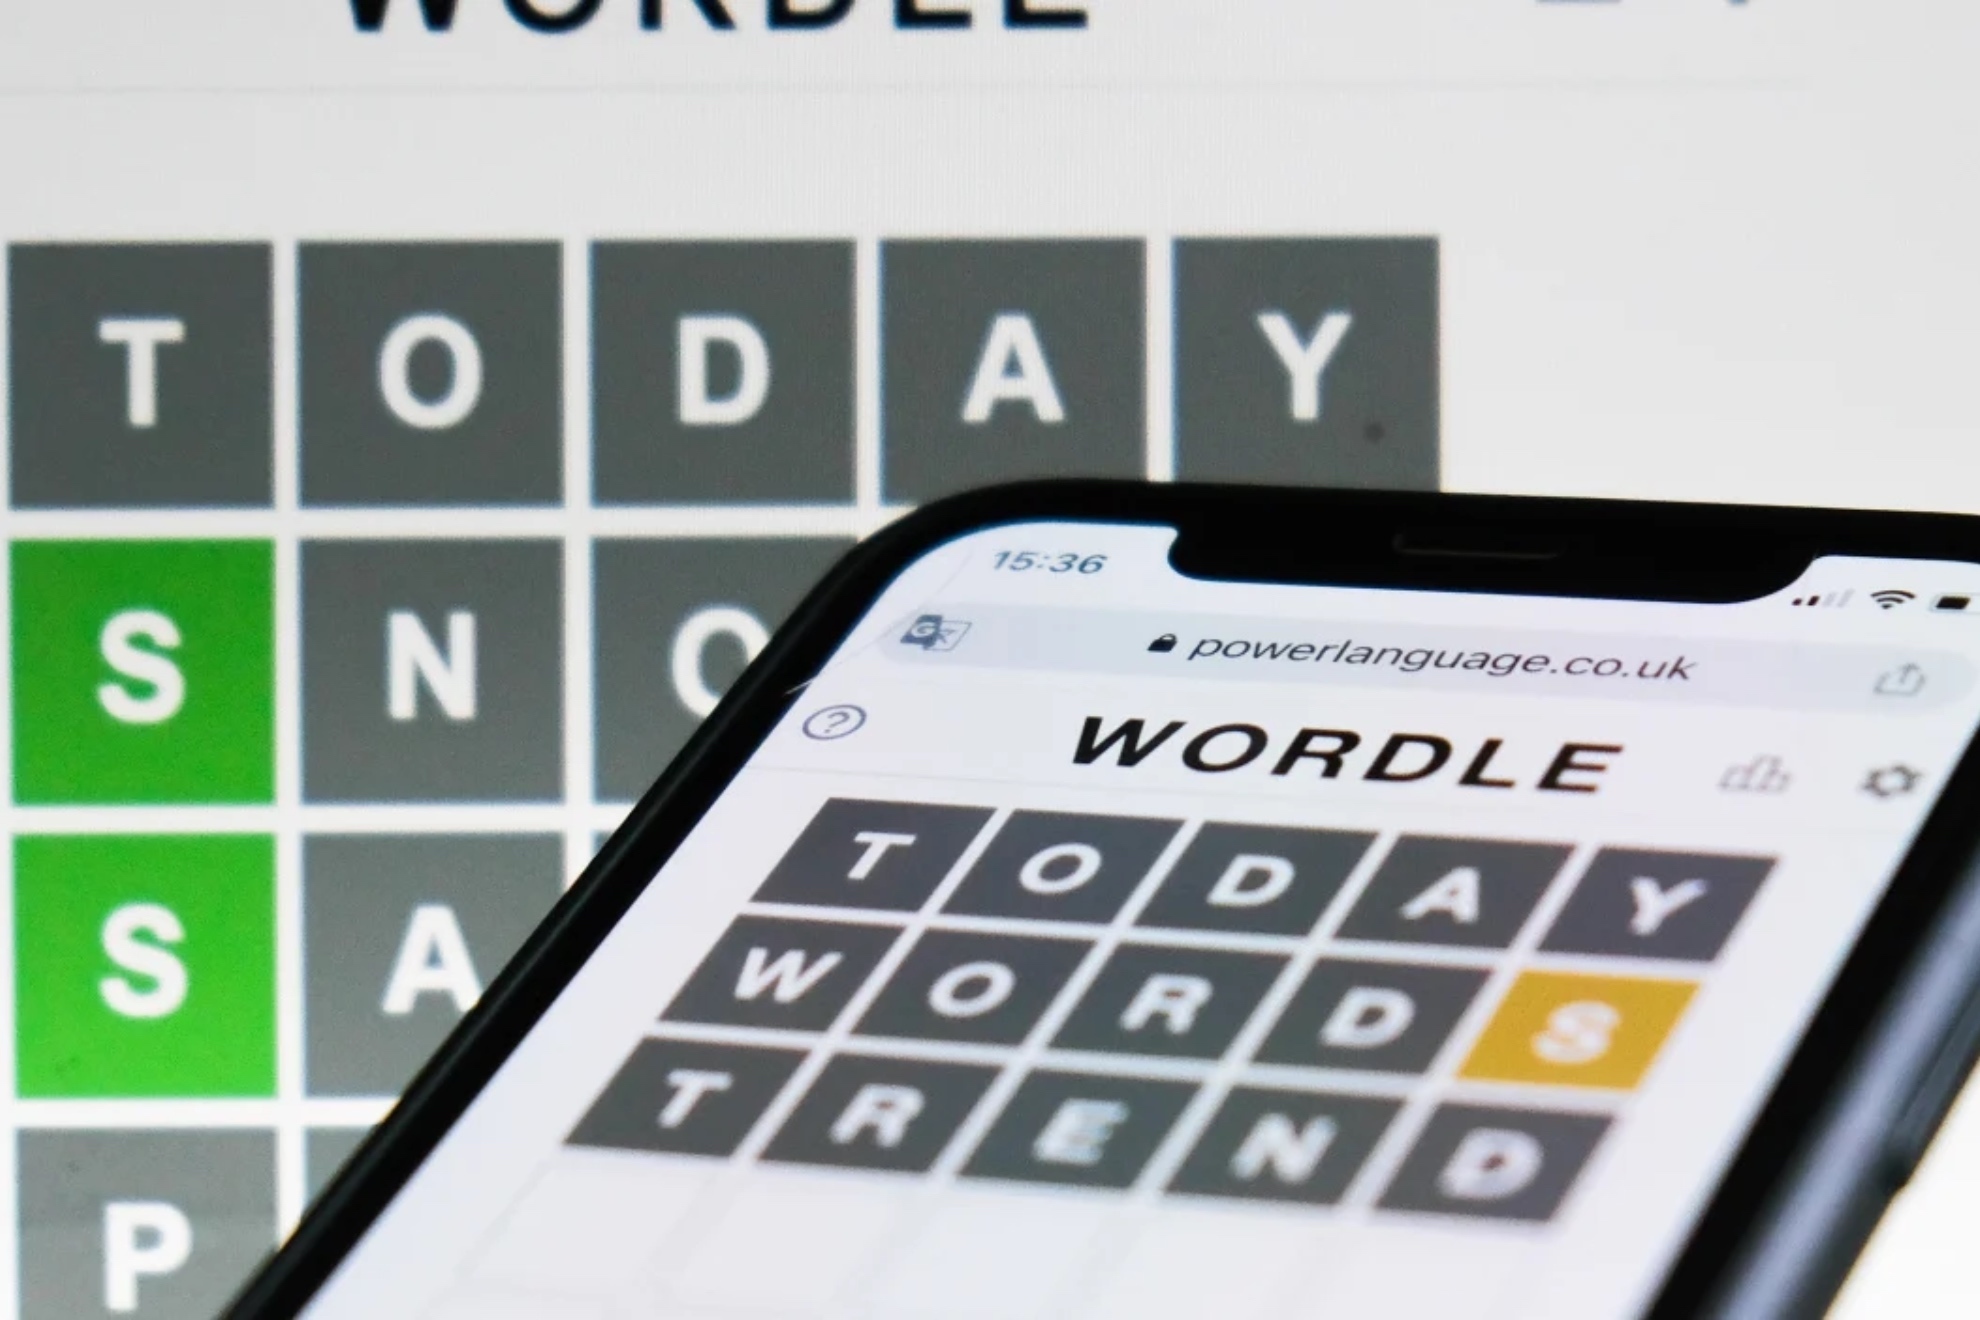 Wordle espaol hoy, 5 de abril: normal, tildes y cientfico | Soluciones y pistas para adivinar la palabra